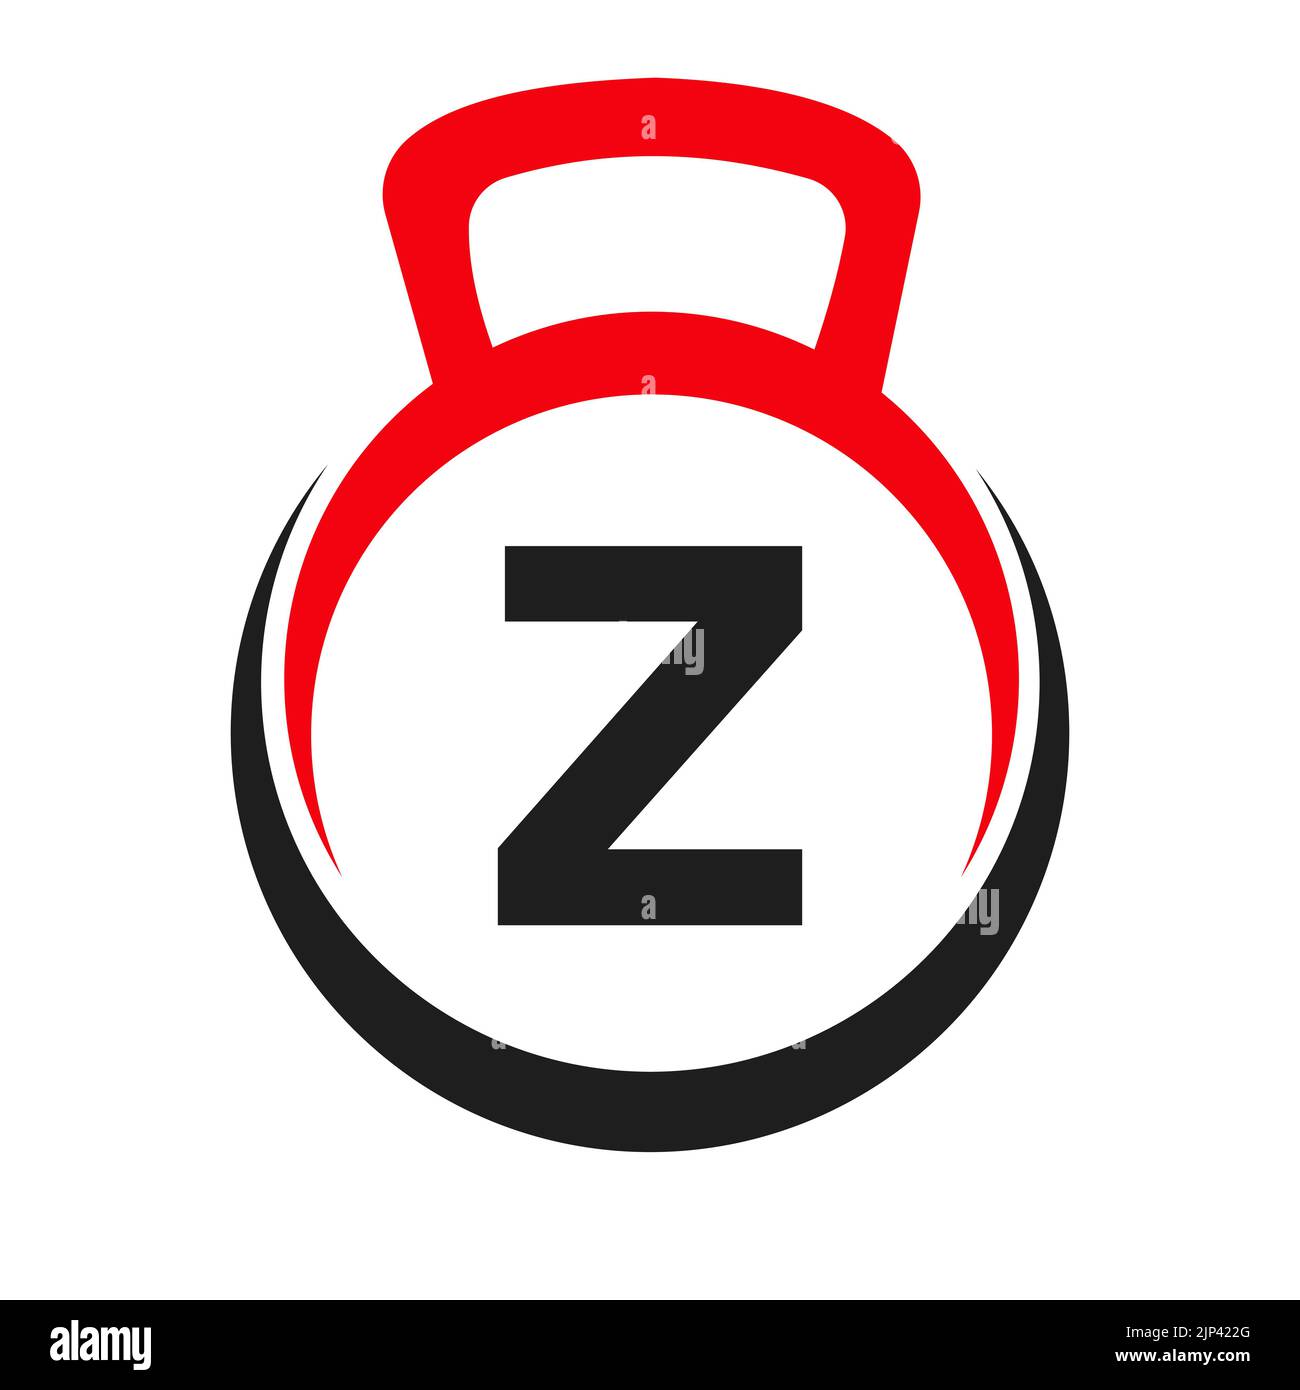 Letter Z Fitness Gym Logo Vector Template. Fitness Logo Element on Alphabet Z Symbol Stock Vector